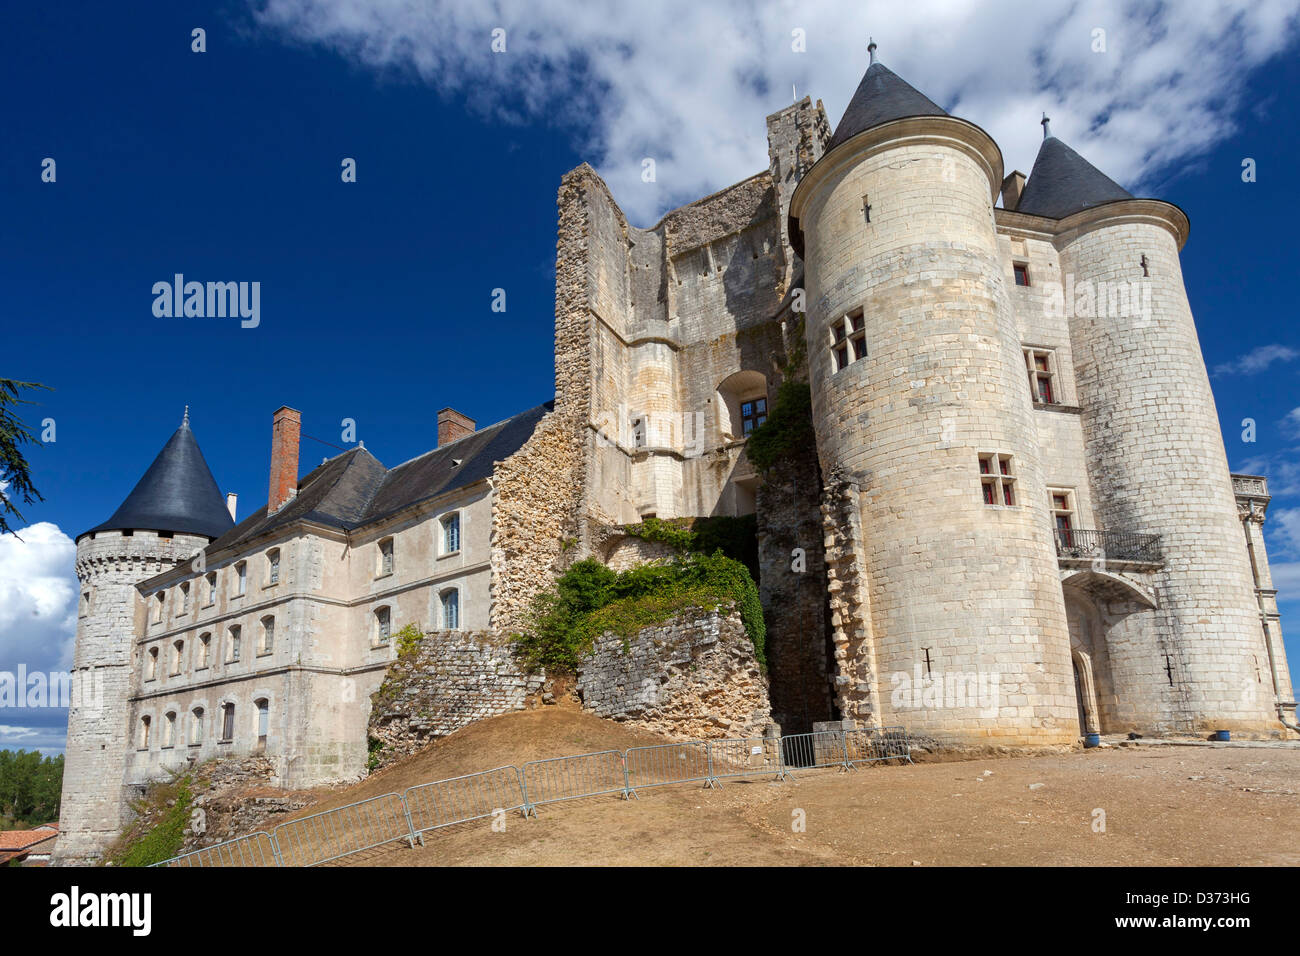 Chateau de la Rochefoucauld,  Charente, France Stock Photo